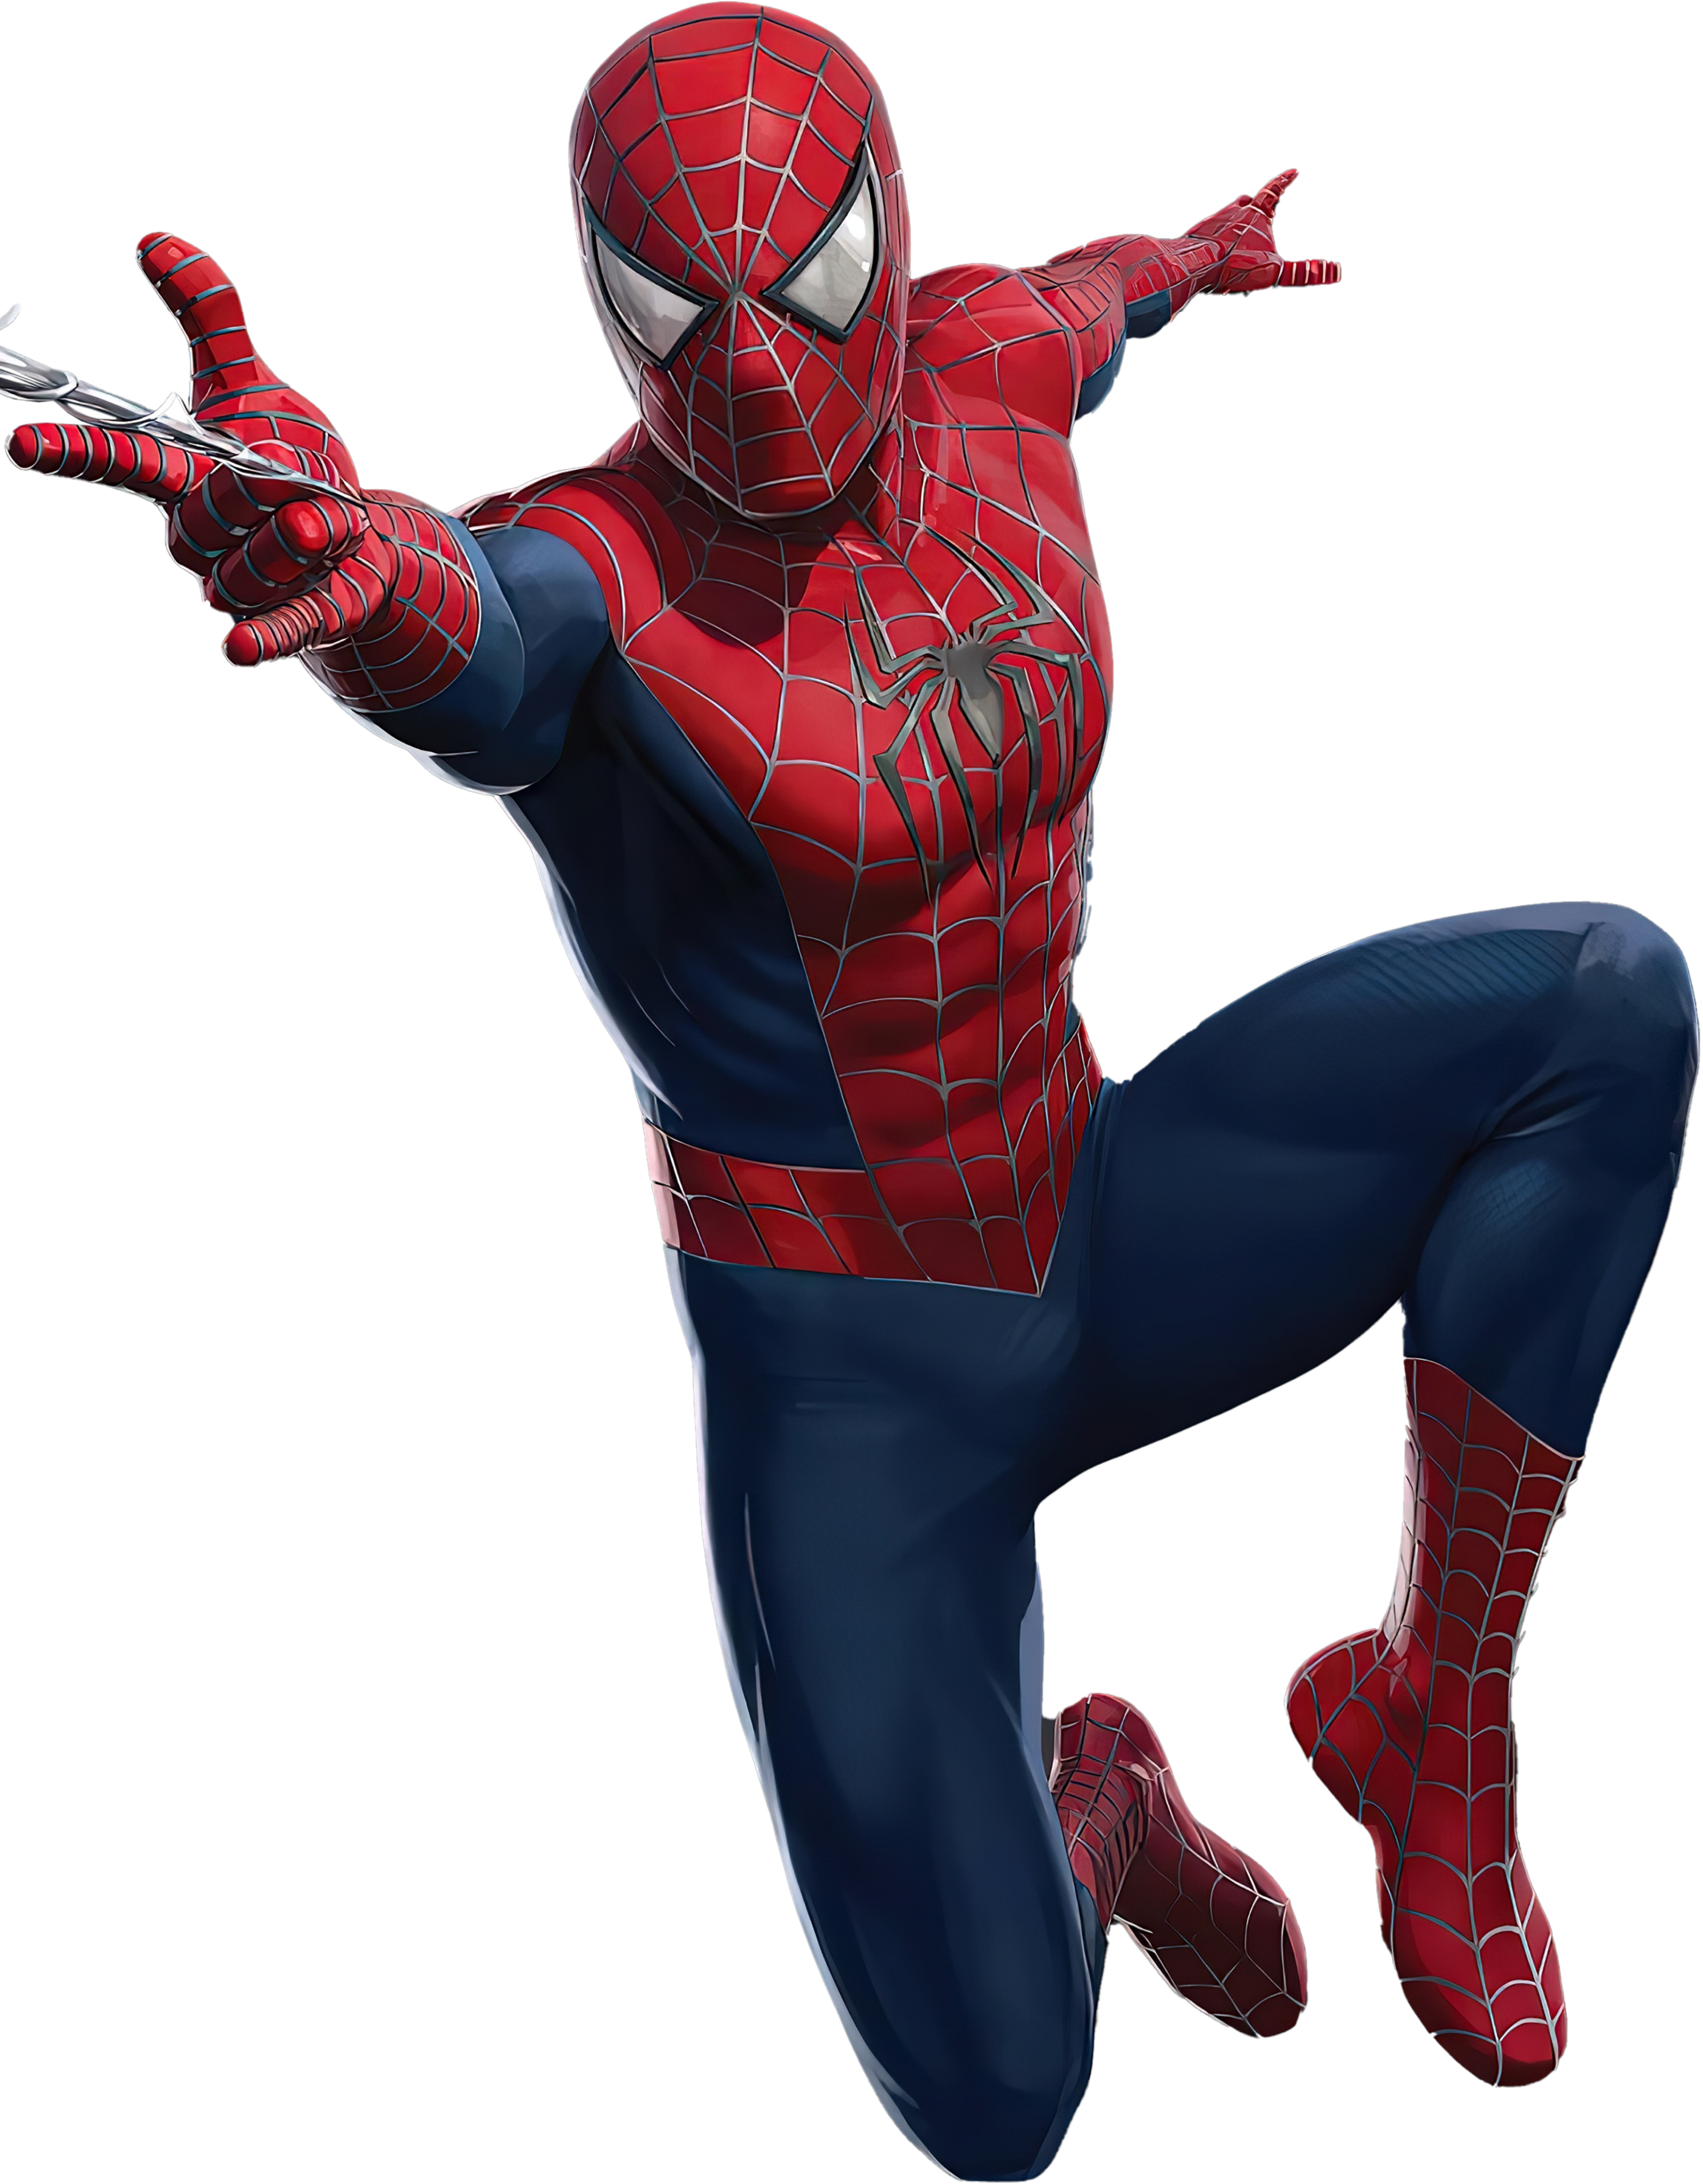 Tobey Maguire, Spider-Man Movies Wiki